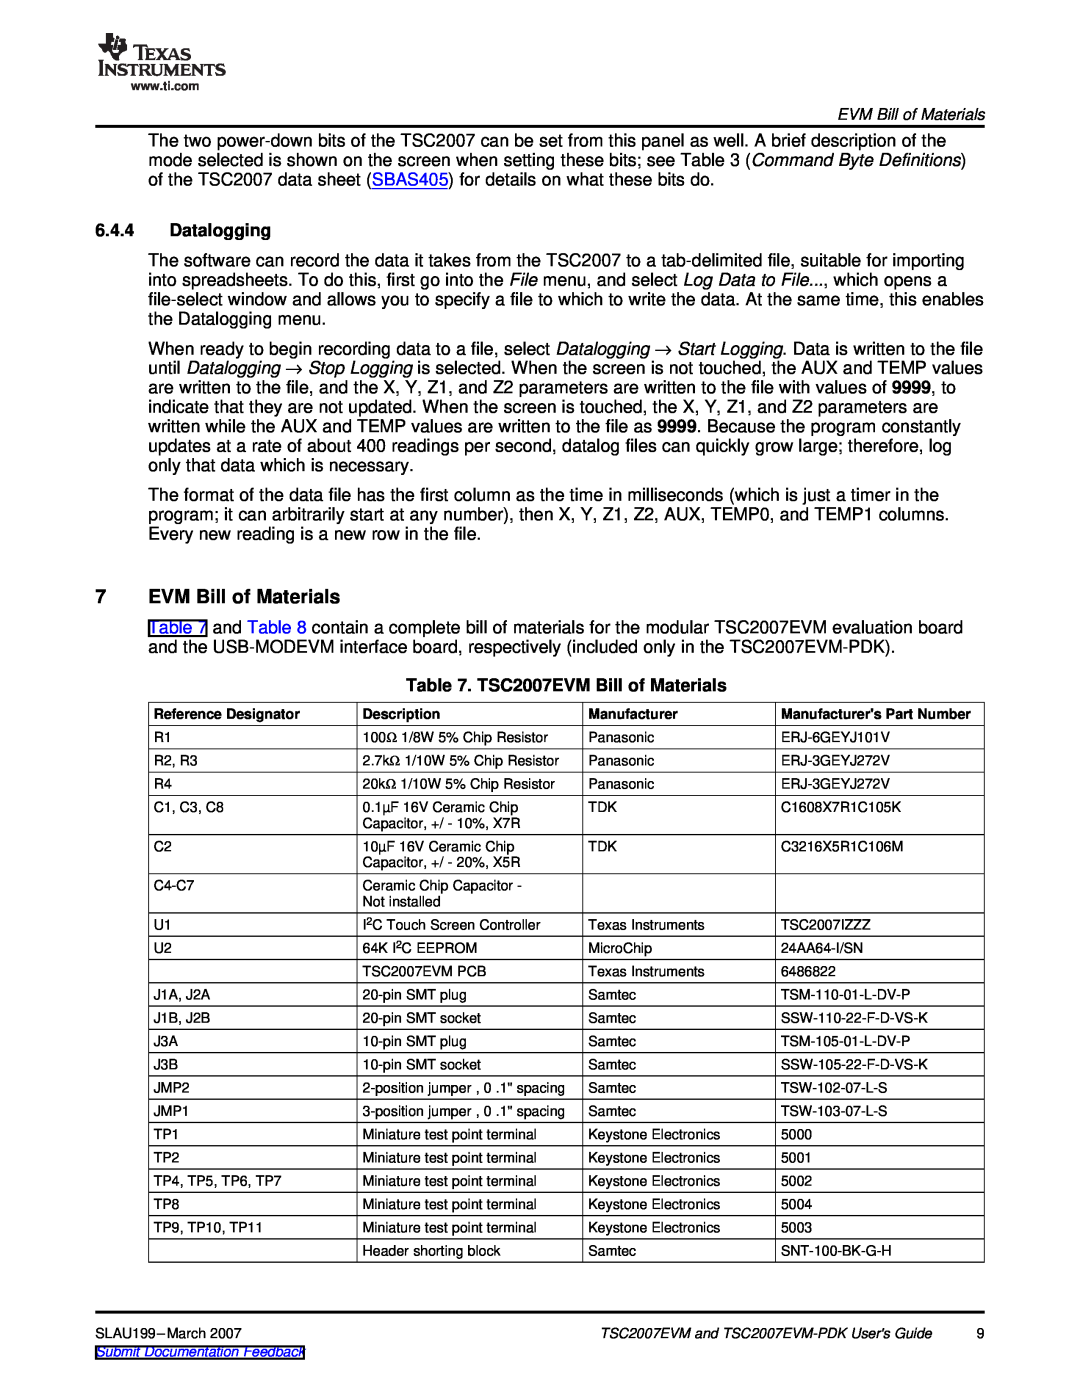 Texas Instruments TSC2007EVM-PDK manual Datalogging, TSC2007EVM Bill of Materials 